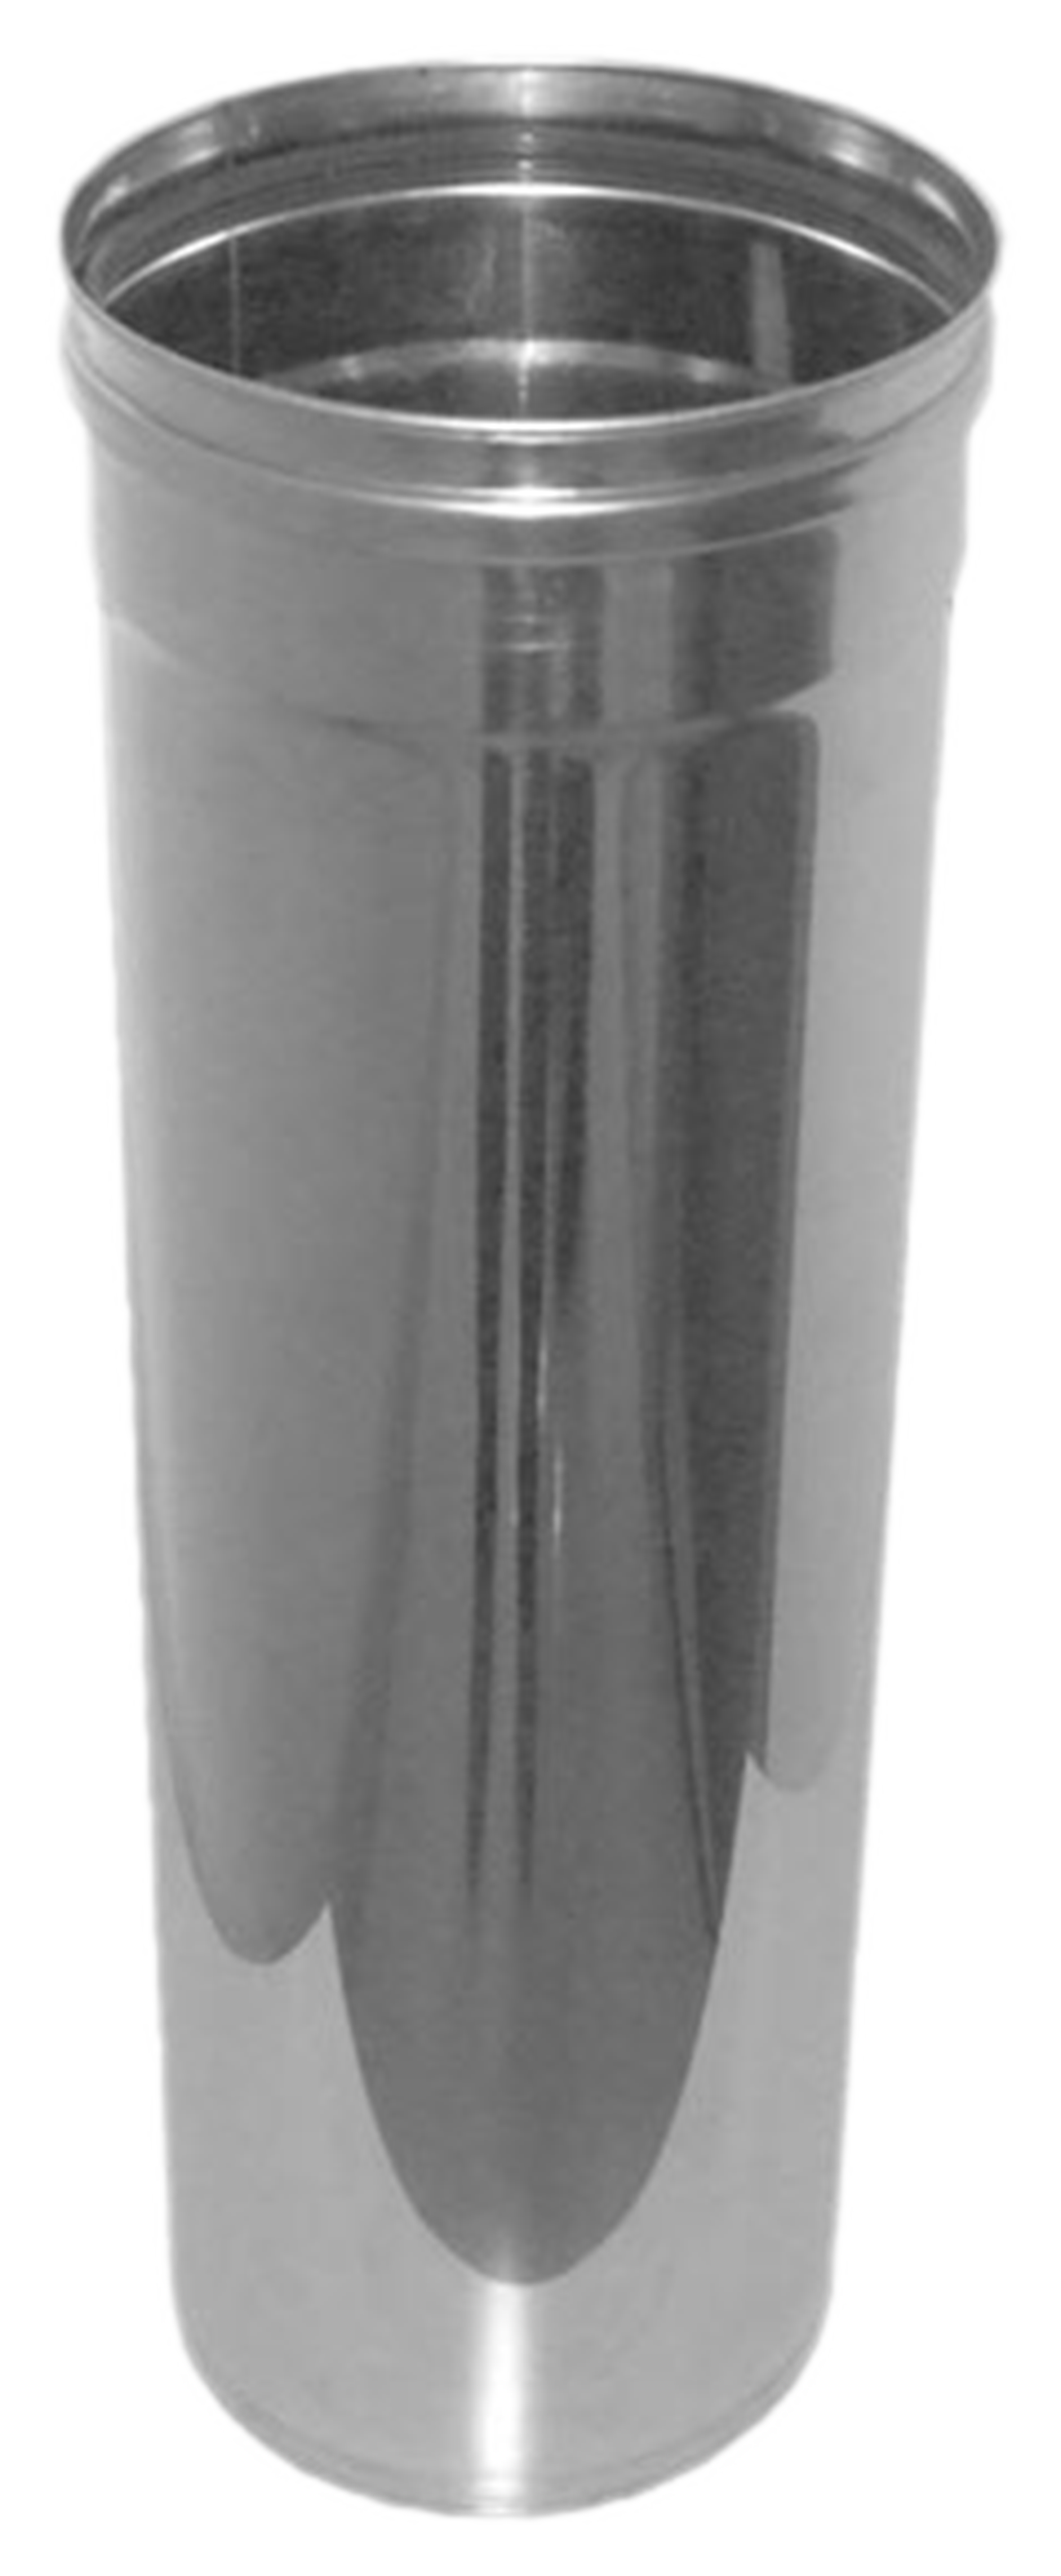 Tubo extensible de acero inoxidable 110 mm de ø 0,32 cm